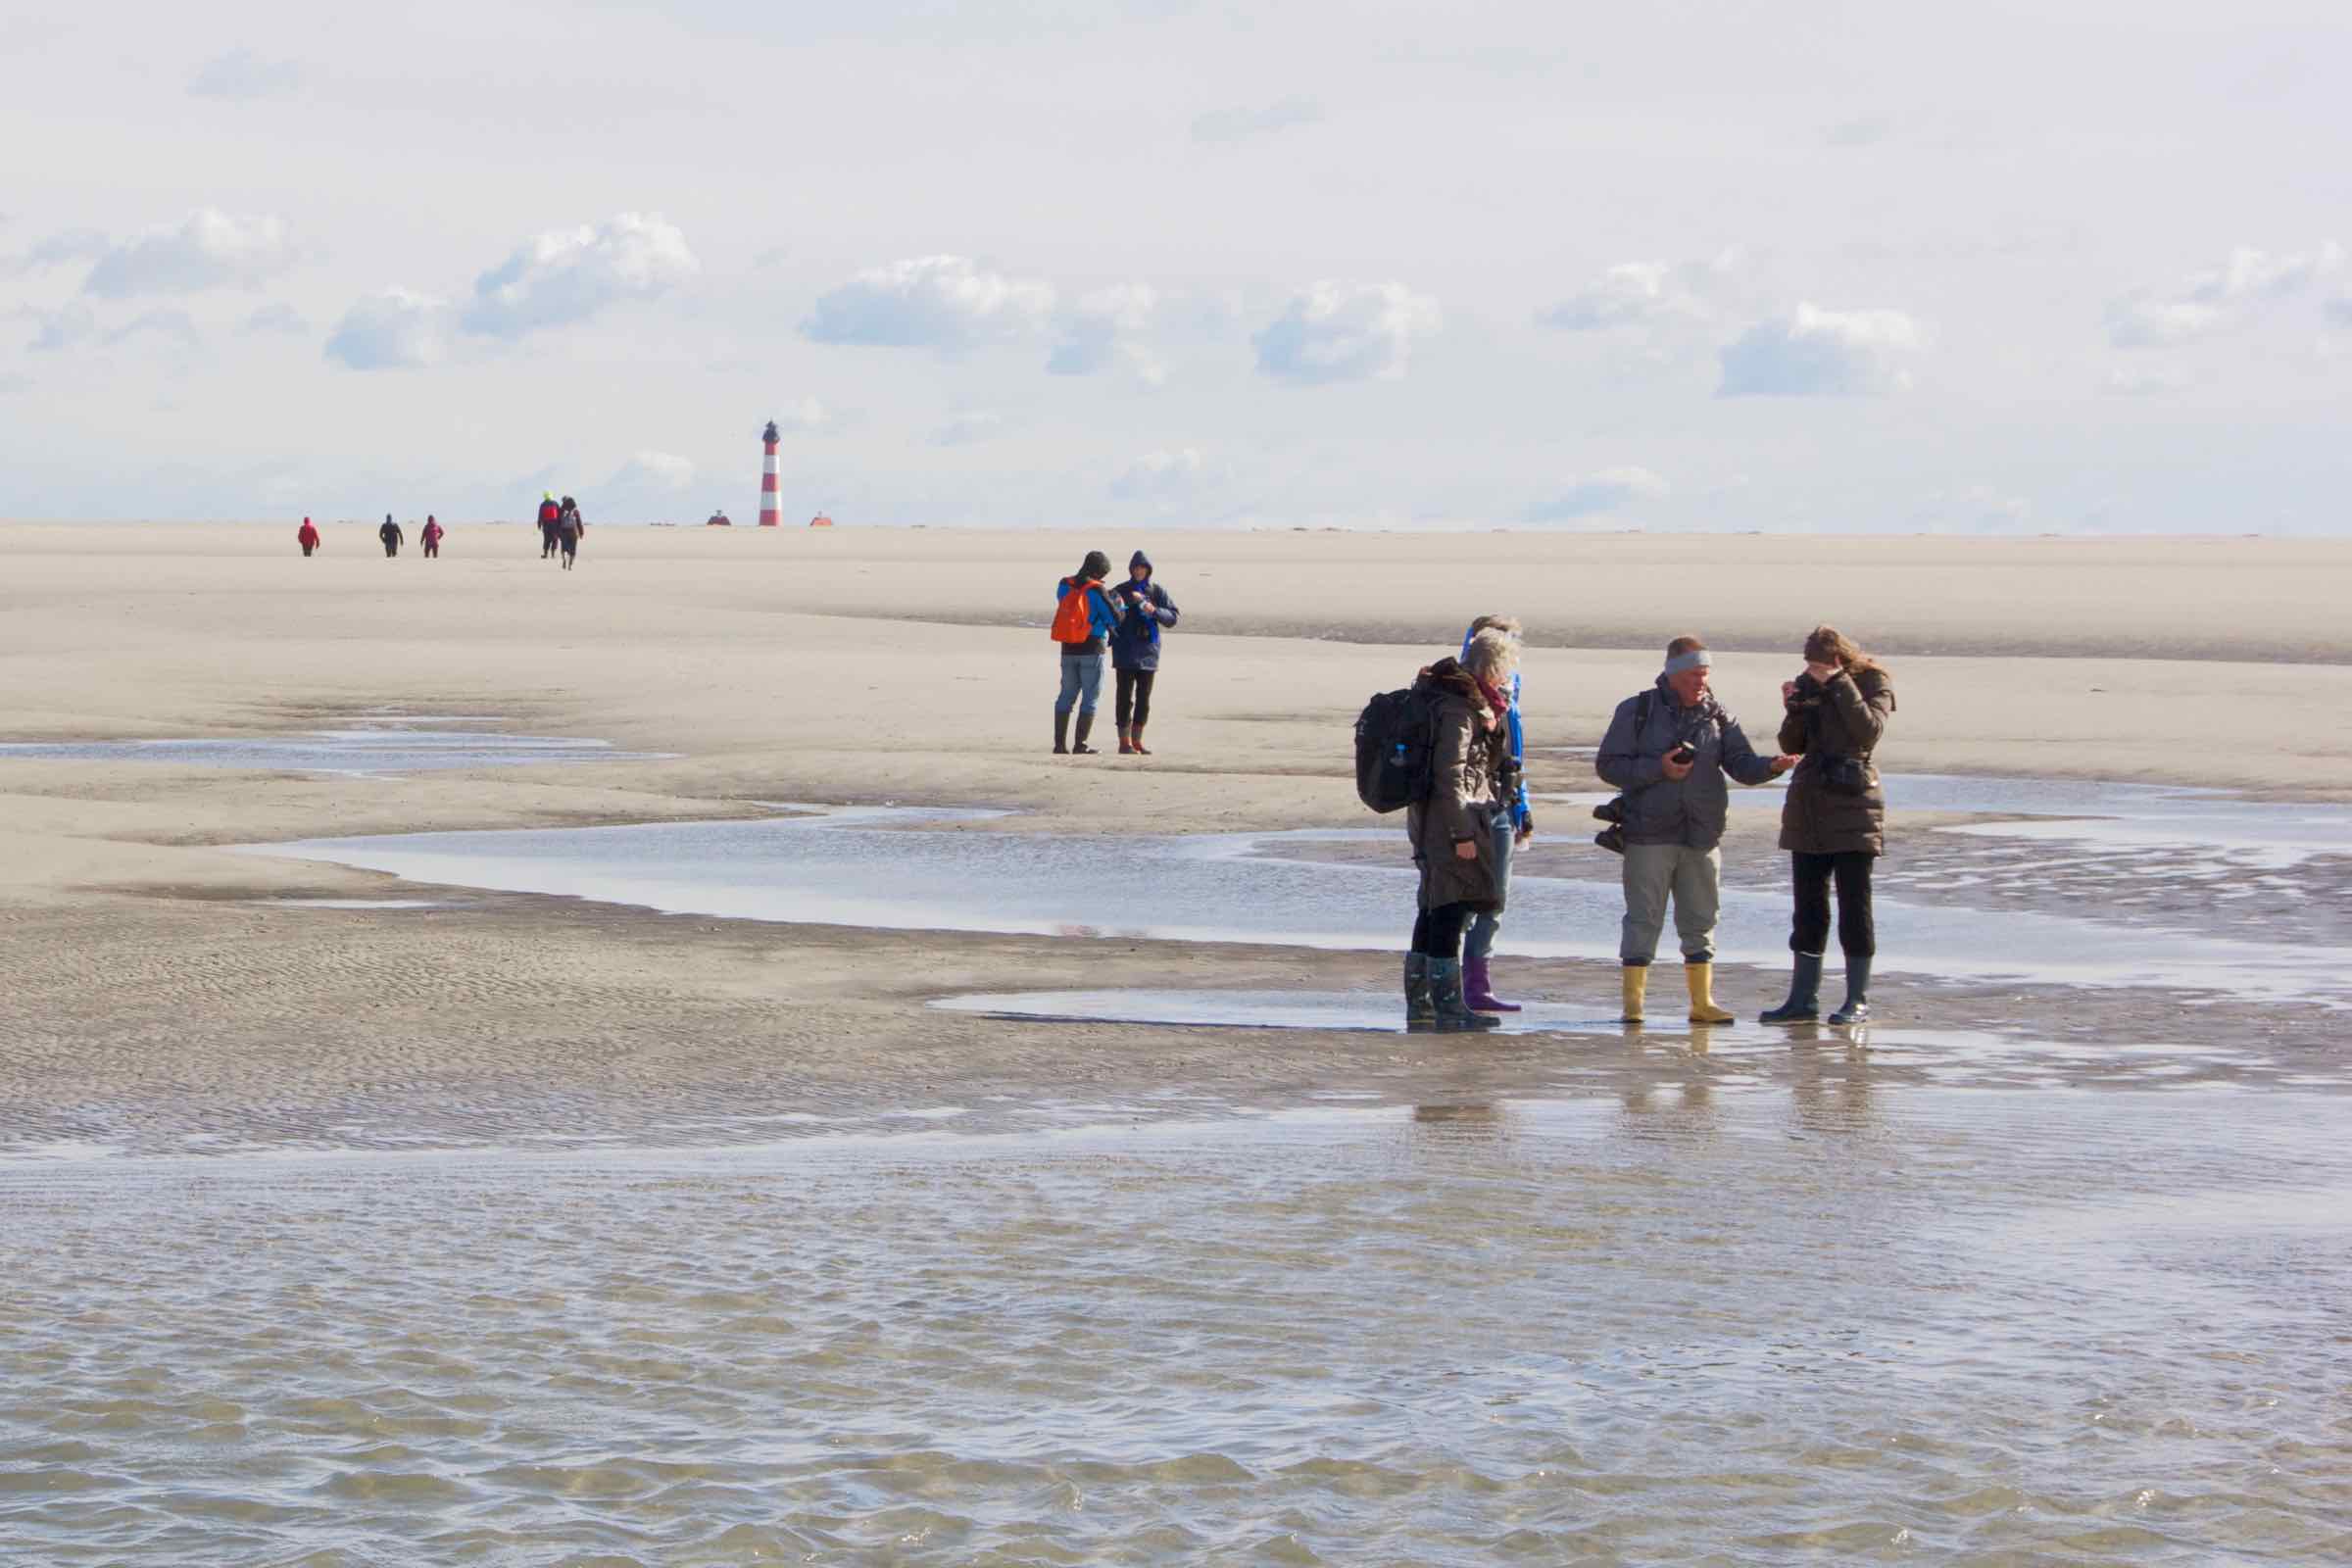 Meeresgrund trifft Horizont! Durch das Watt wandern wir hinaus bis zur Sandbank vor Westerhever. In Schlick und Sand erkunden wir das interessante Leben im Weltnaturerbe Wattenmeer.